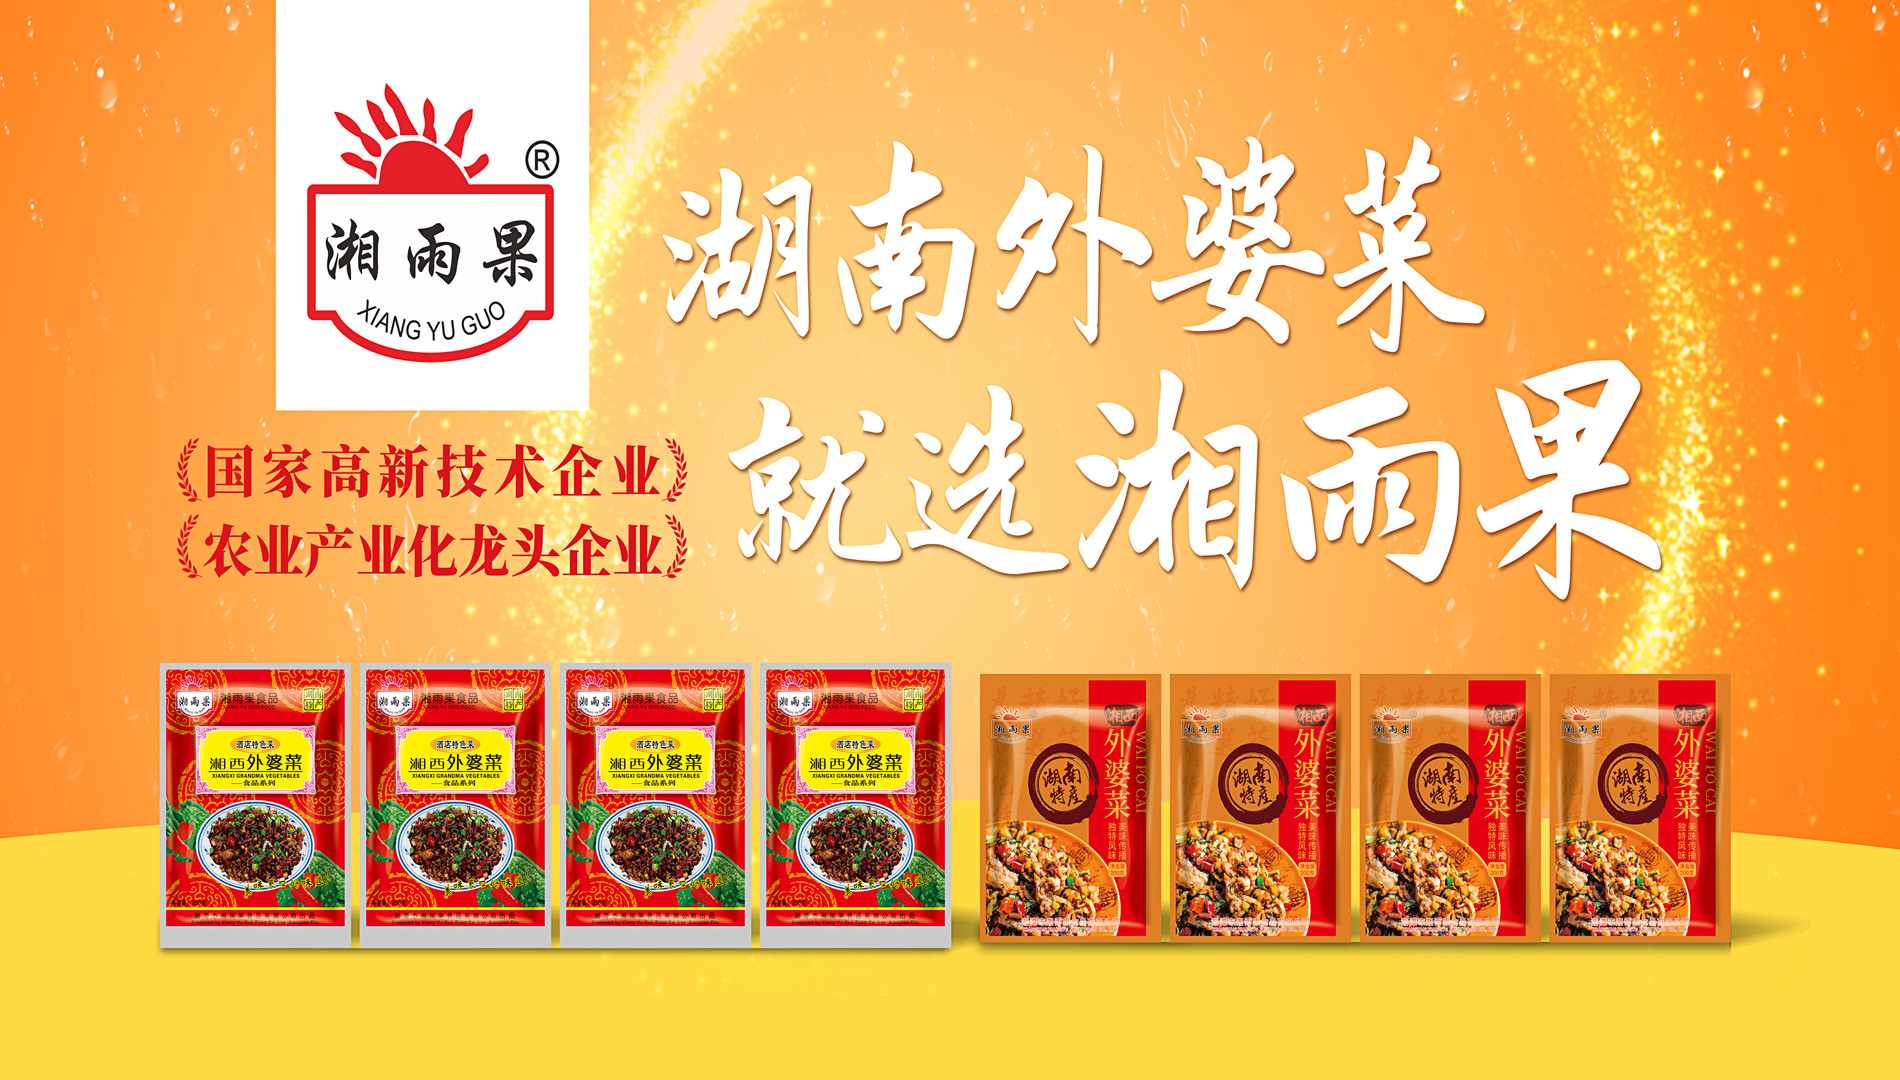 Xiang Yu Guo Food- Նախապատրաստված ուտեստների արդյունաբերության ուղենիշային ձեռնարկություն